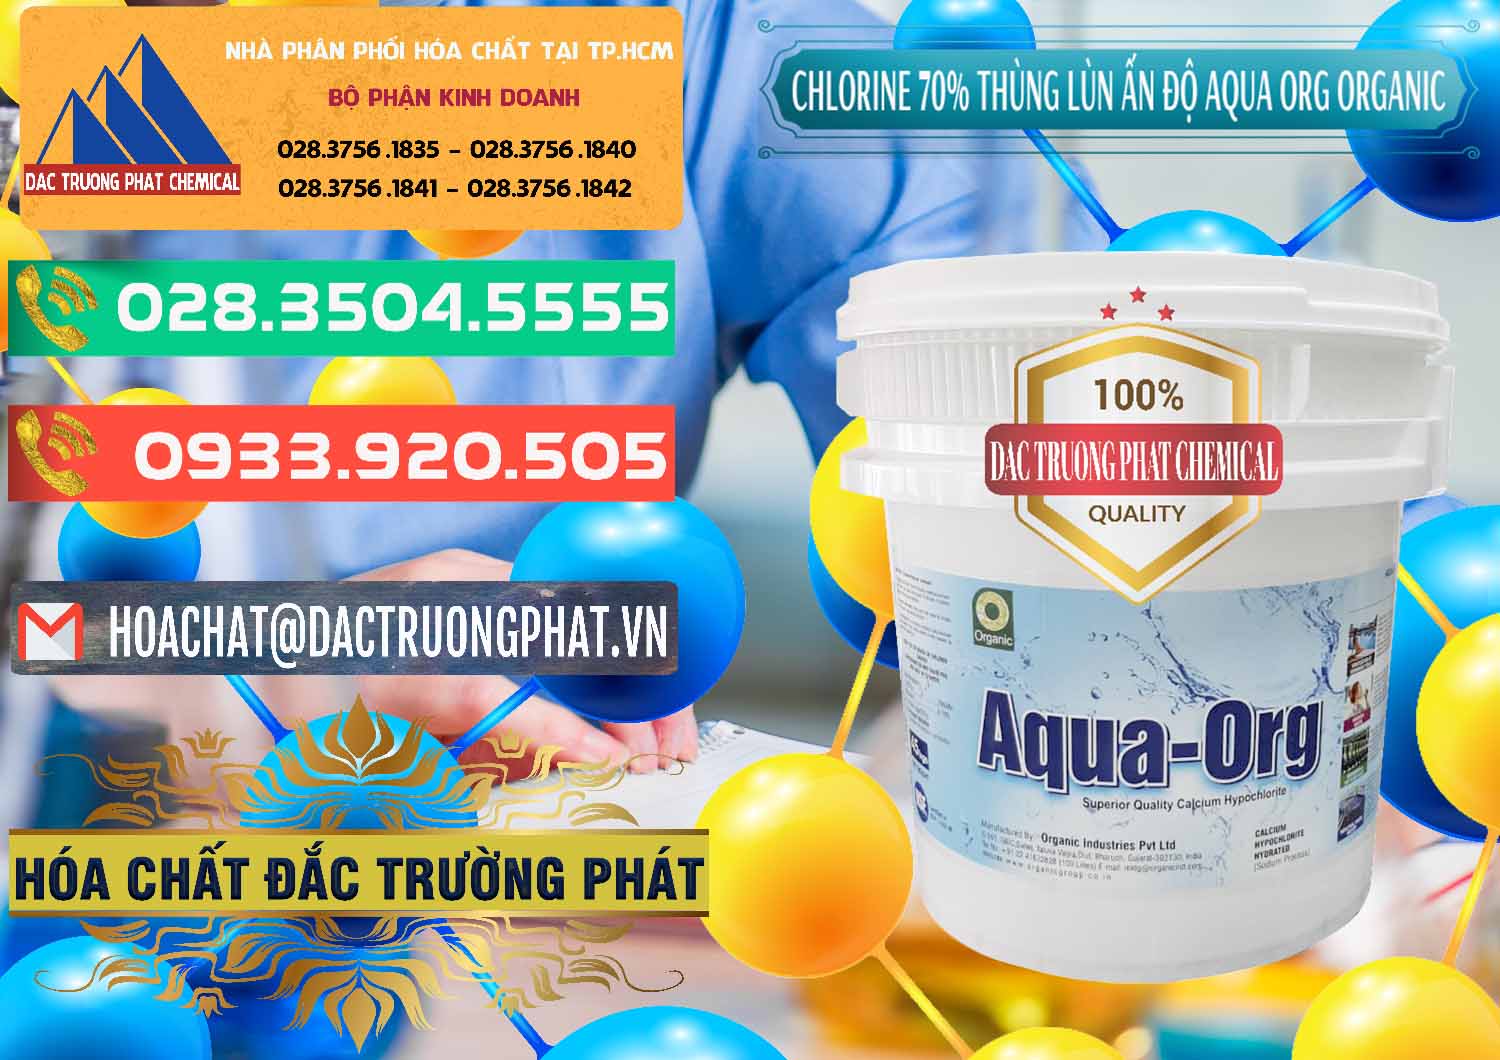 Cty chuyên bán ( cung cấp ) Chlorine – Clorin 70% Thùng Lùn Ấn Độ Aqua ORG Organic India - 0212 - Công ty cung ứng ( phân phối ) hóa chất tại TP.HCM - congtyhoachat.com.vn